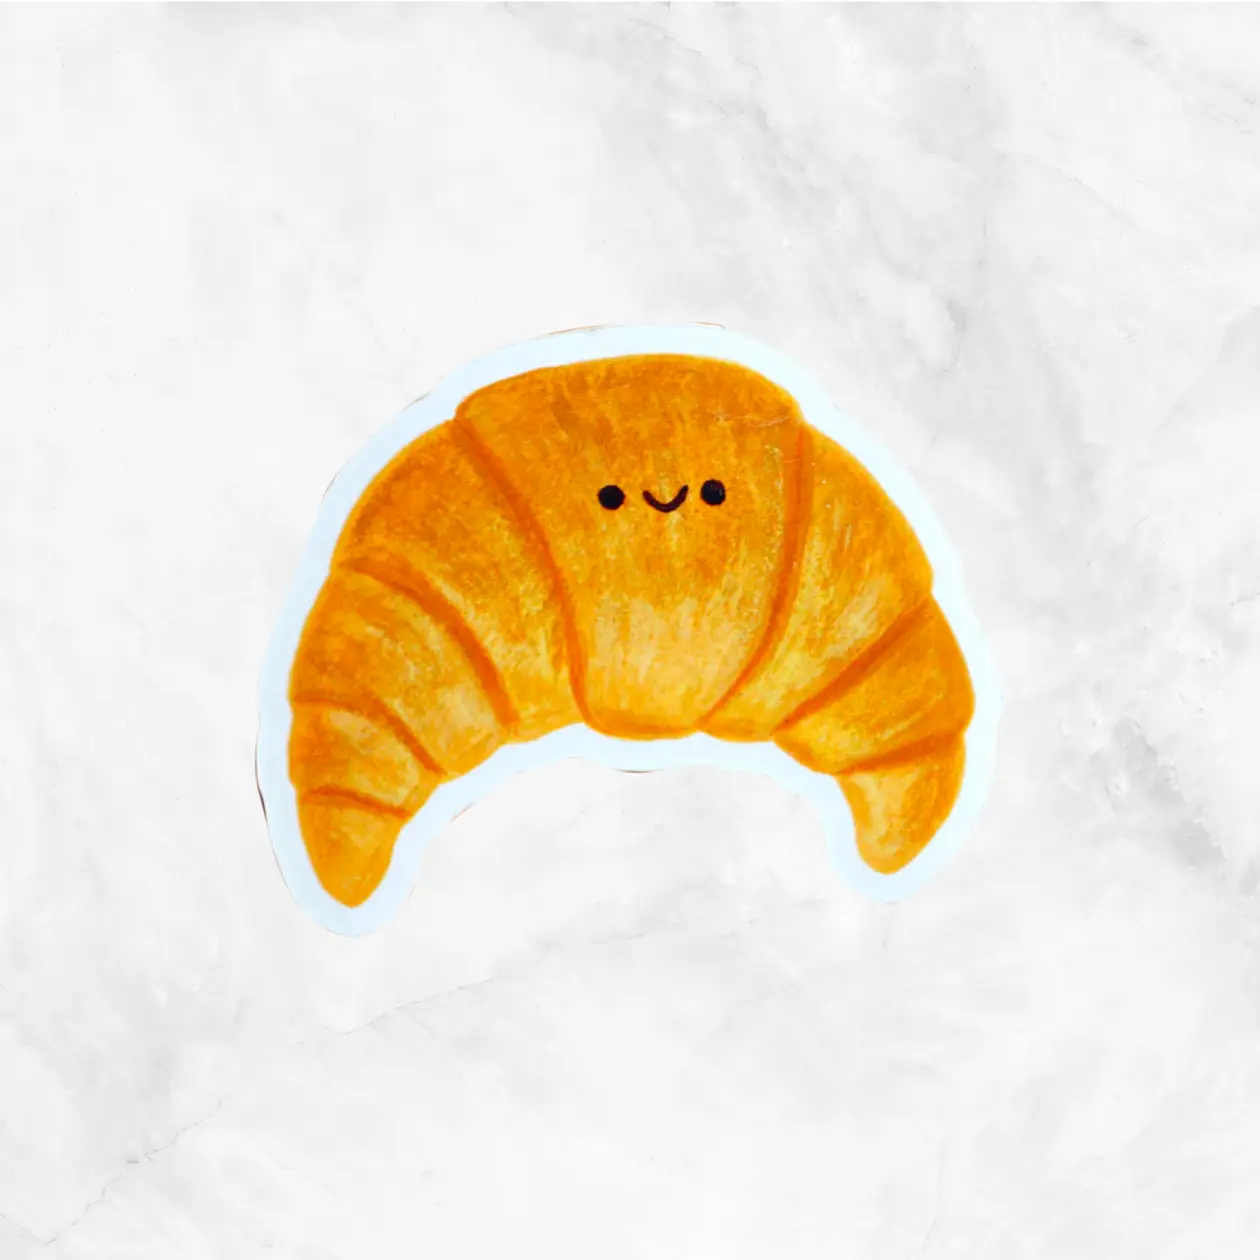 Croissant Sticker